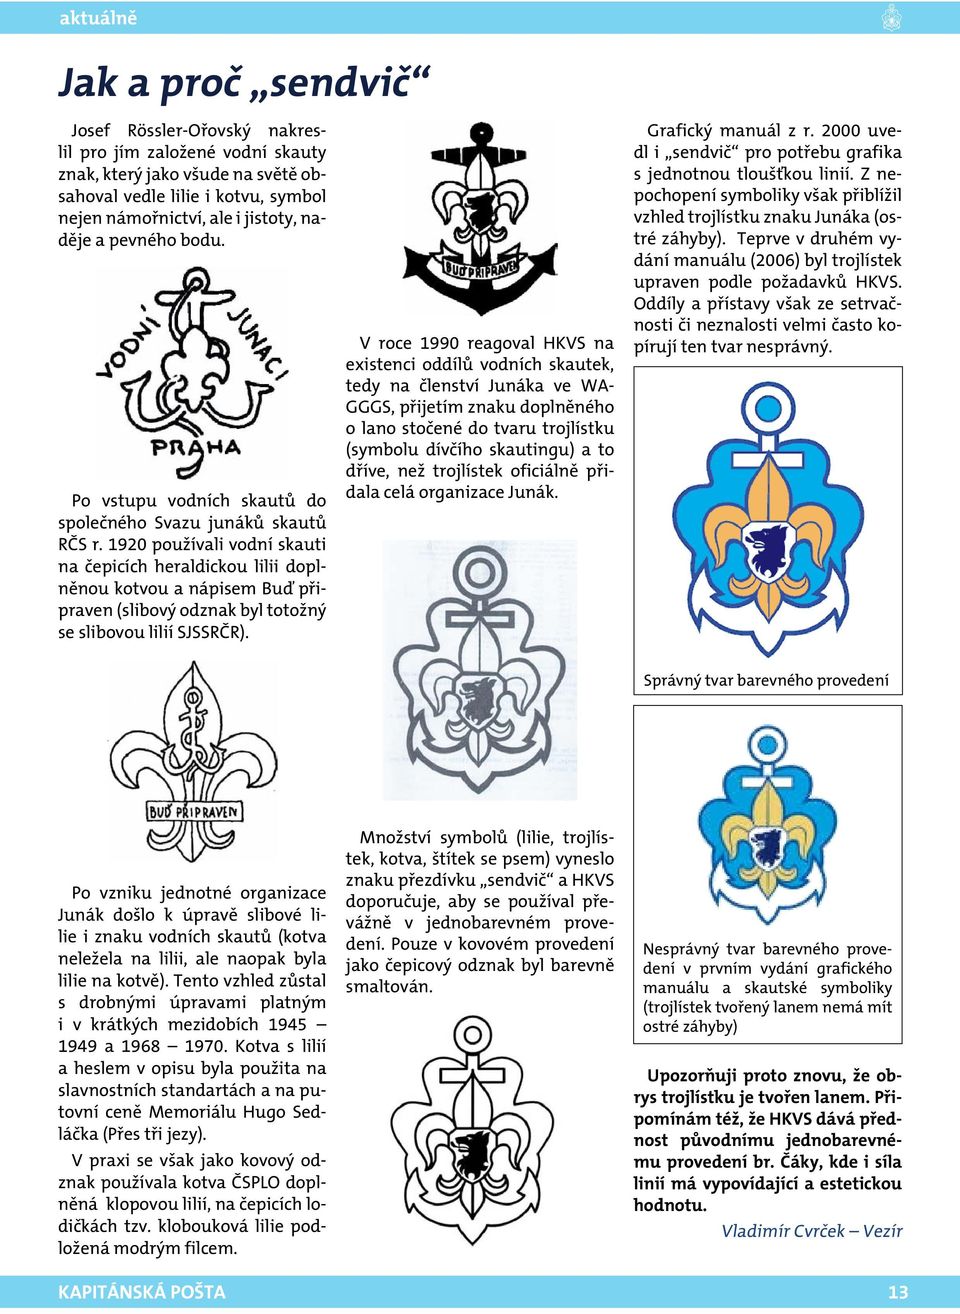 1920 používali vodní skauti na čepicích heraldickou lilii doplněnou kotvou a nápisem Buď připraven (slibový odznak byl totožný se slibovou lilií SJSSRČR).